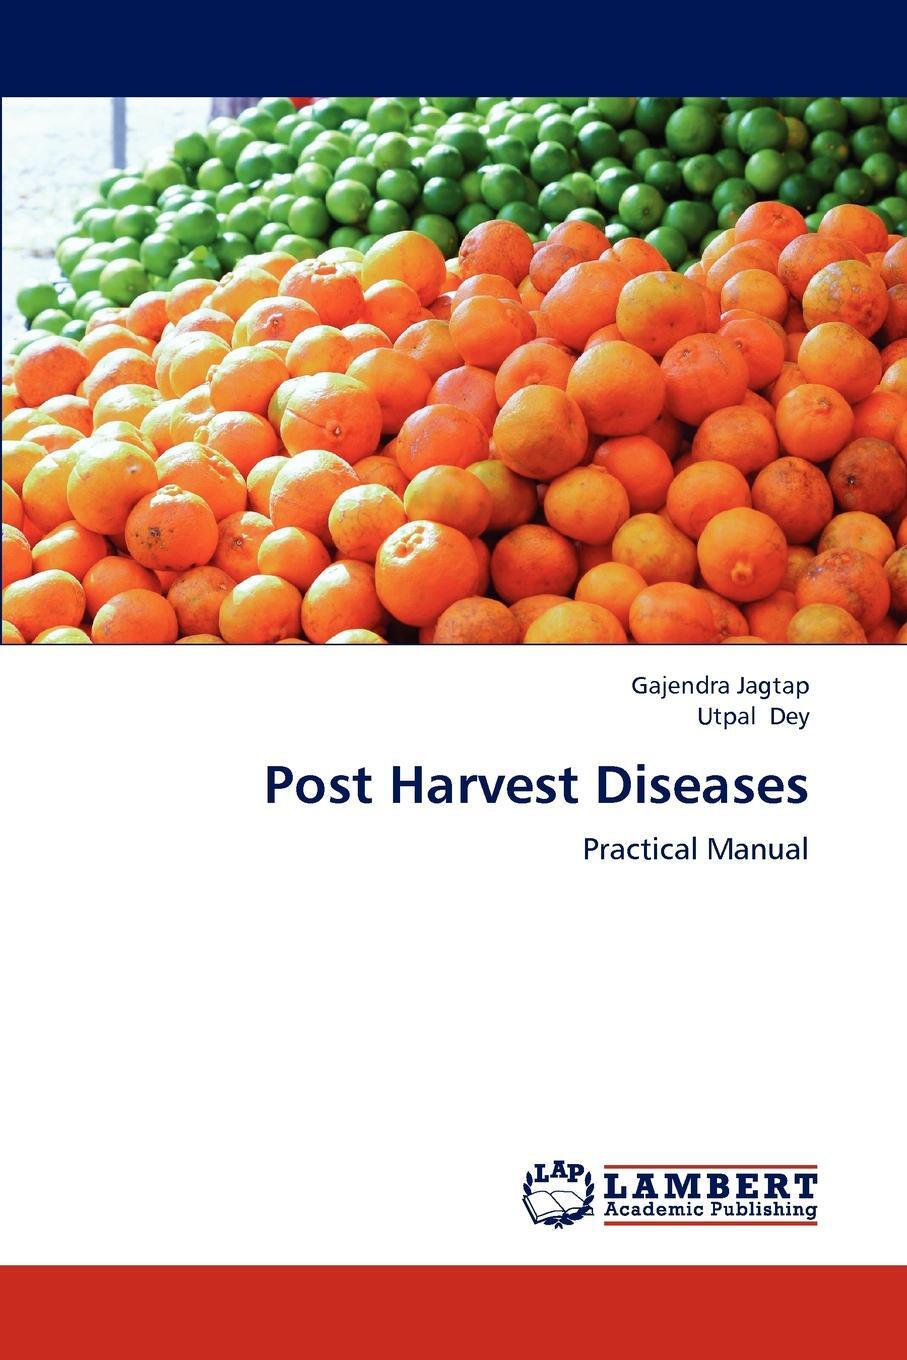 фото Post Harvest Diseases